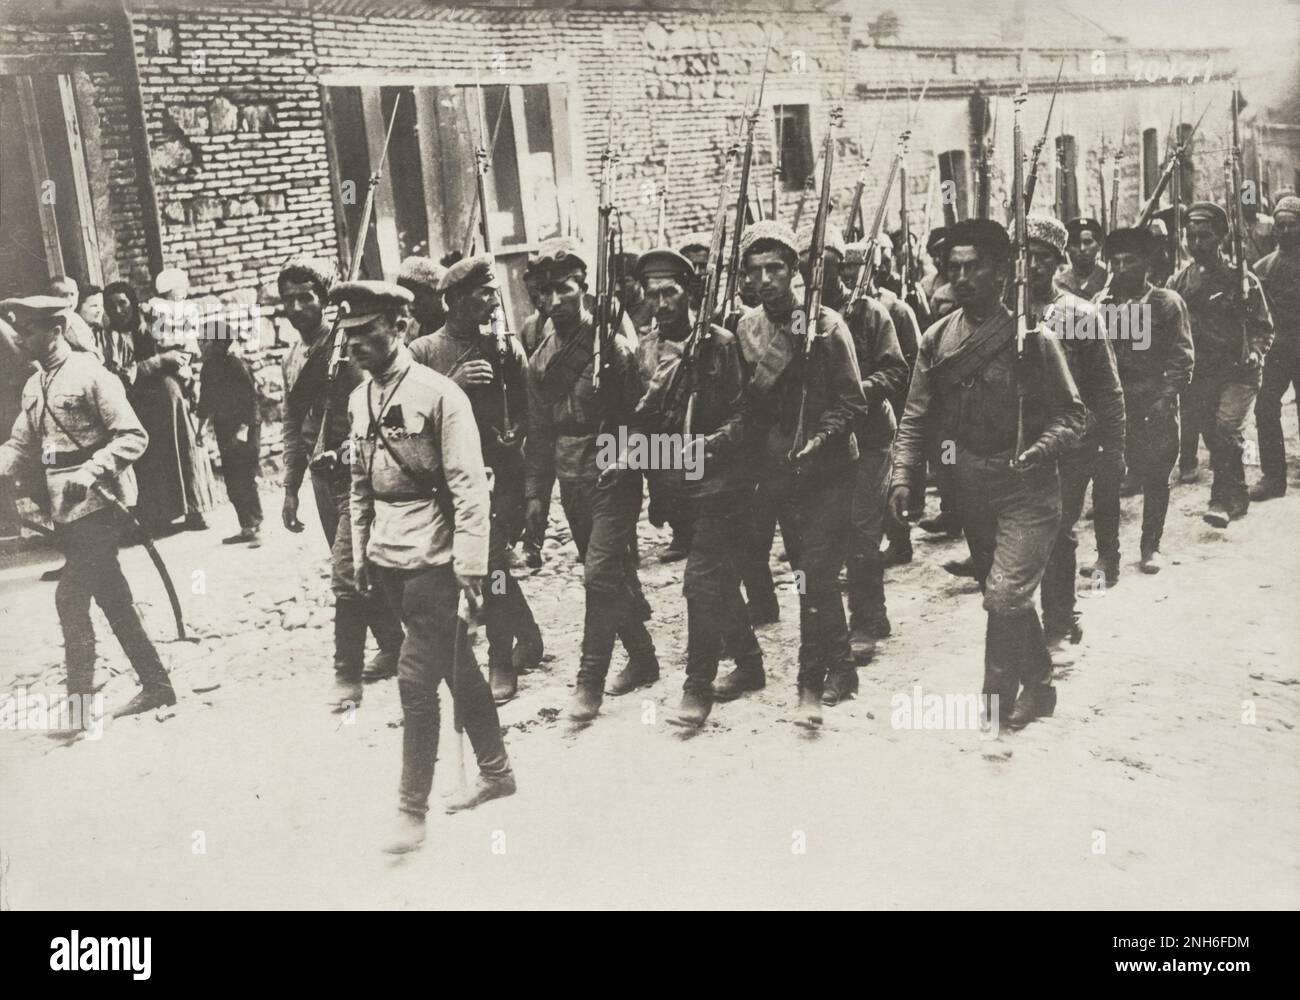 1914-1918. La Primera Guerra Mundial La imagen muestra un tren de soldados rusos que, según la inscripción en la imagen, asisten a una ceremonia funeraria. Foto de stock